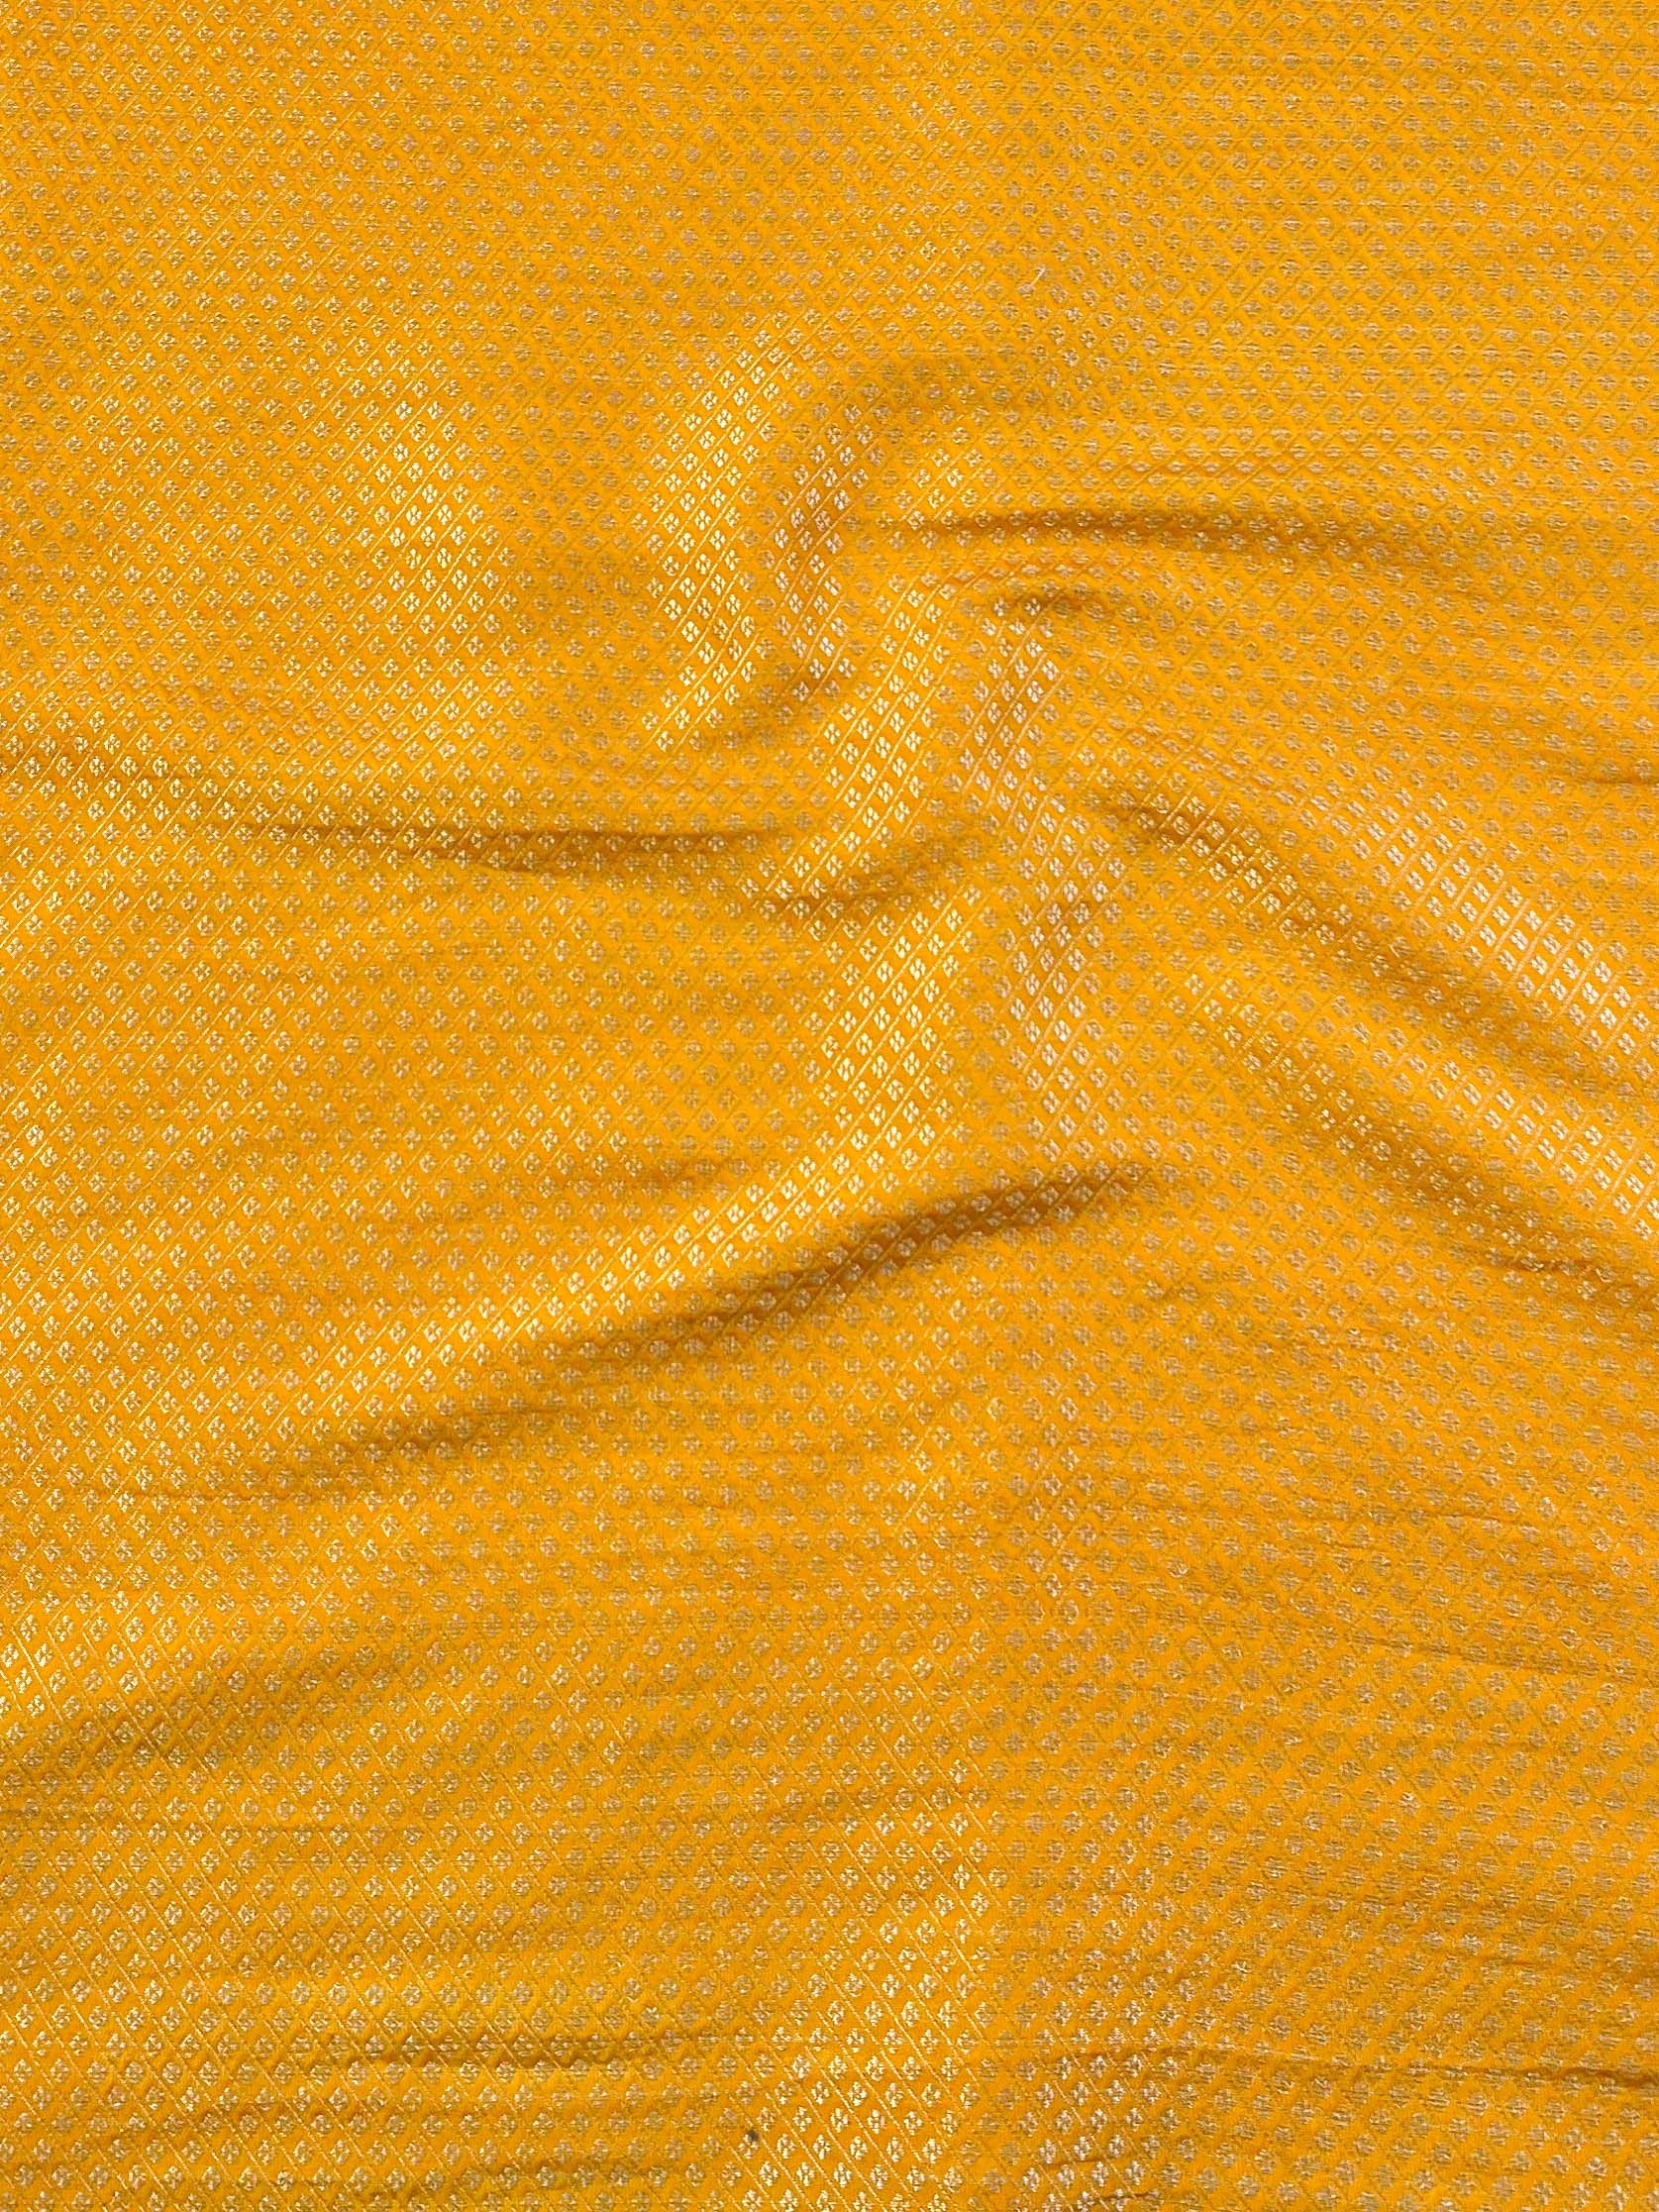 Banarasee Semi Silk Zari Buti Saree With Contrast Border-Brown & Yellow